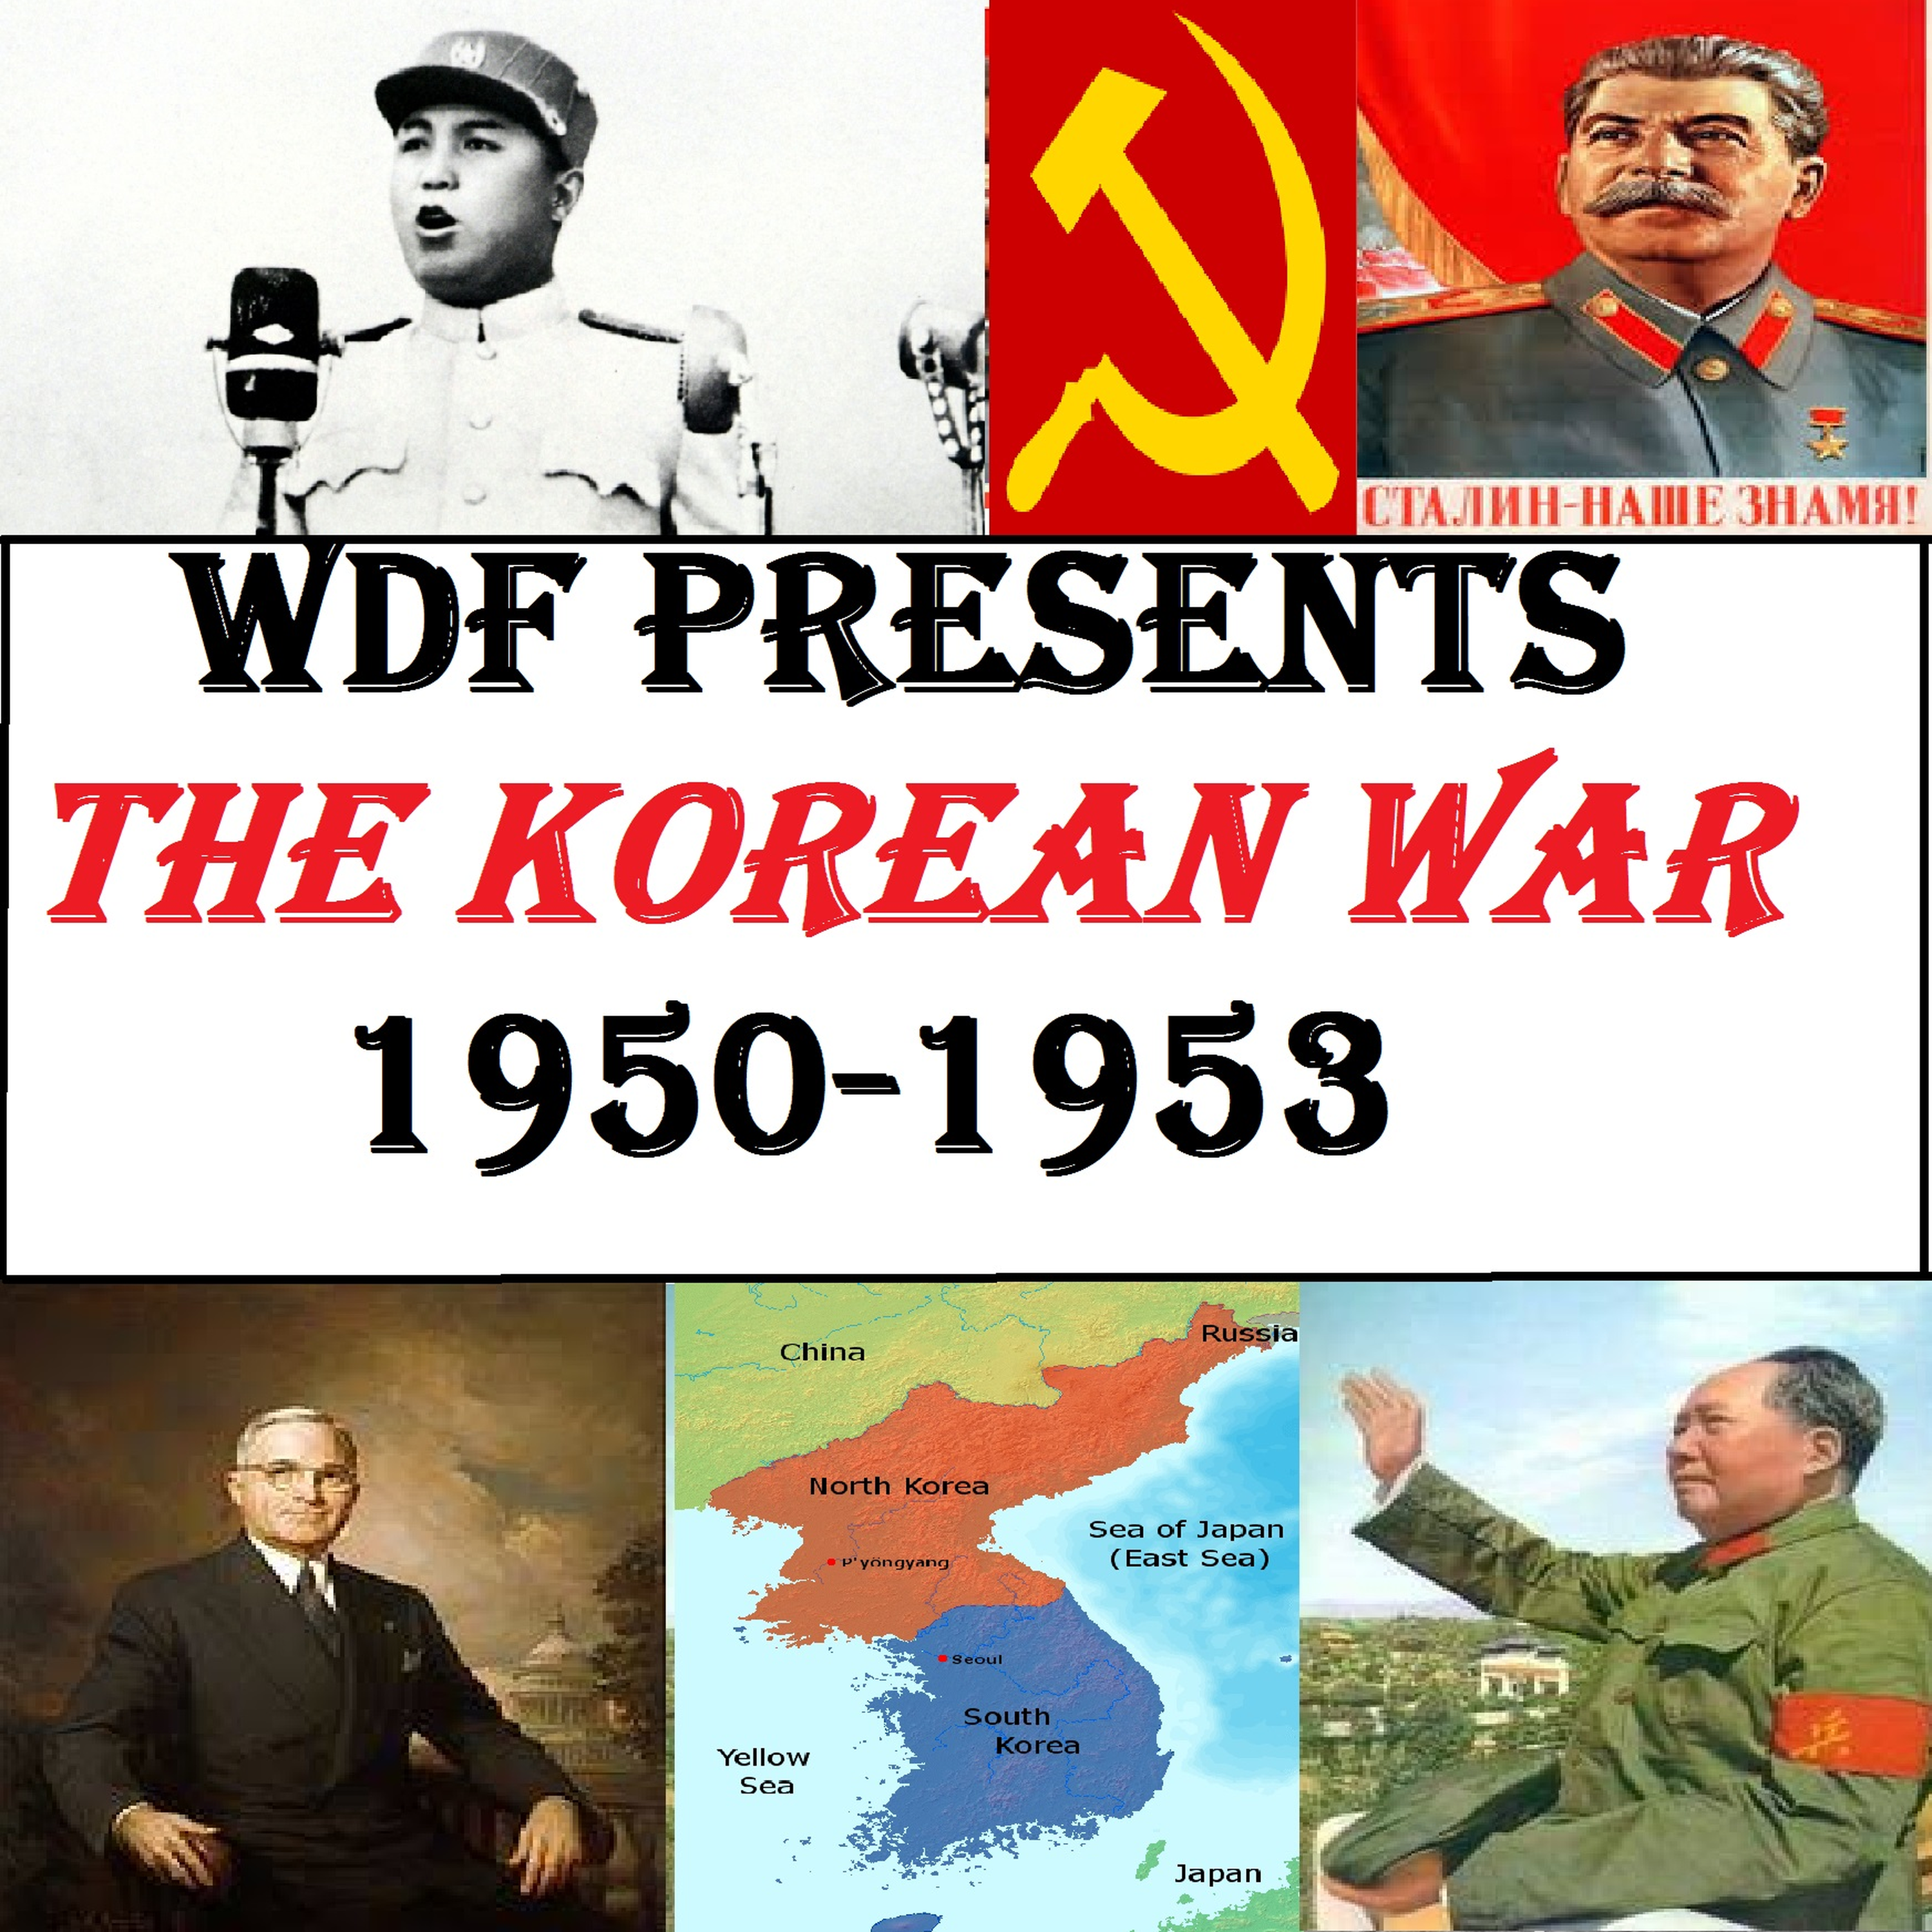 Korean War #40: Shock & Awe